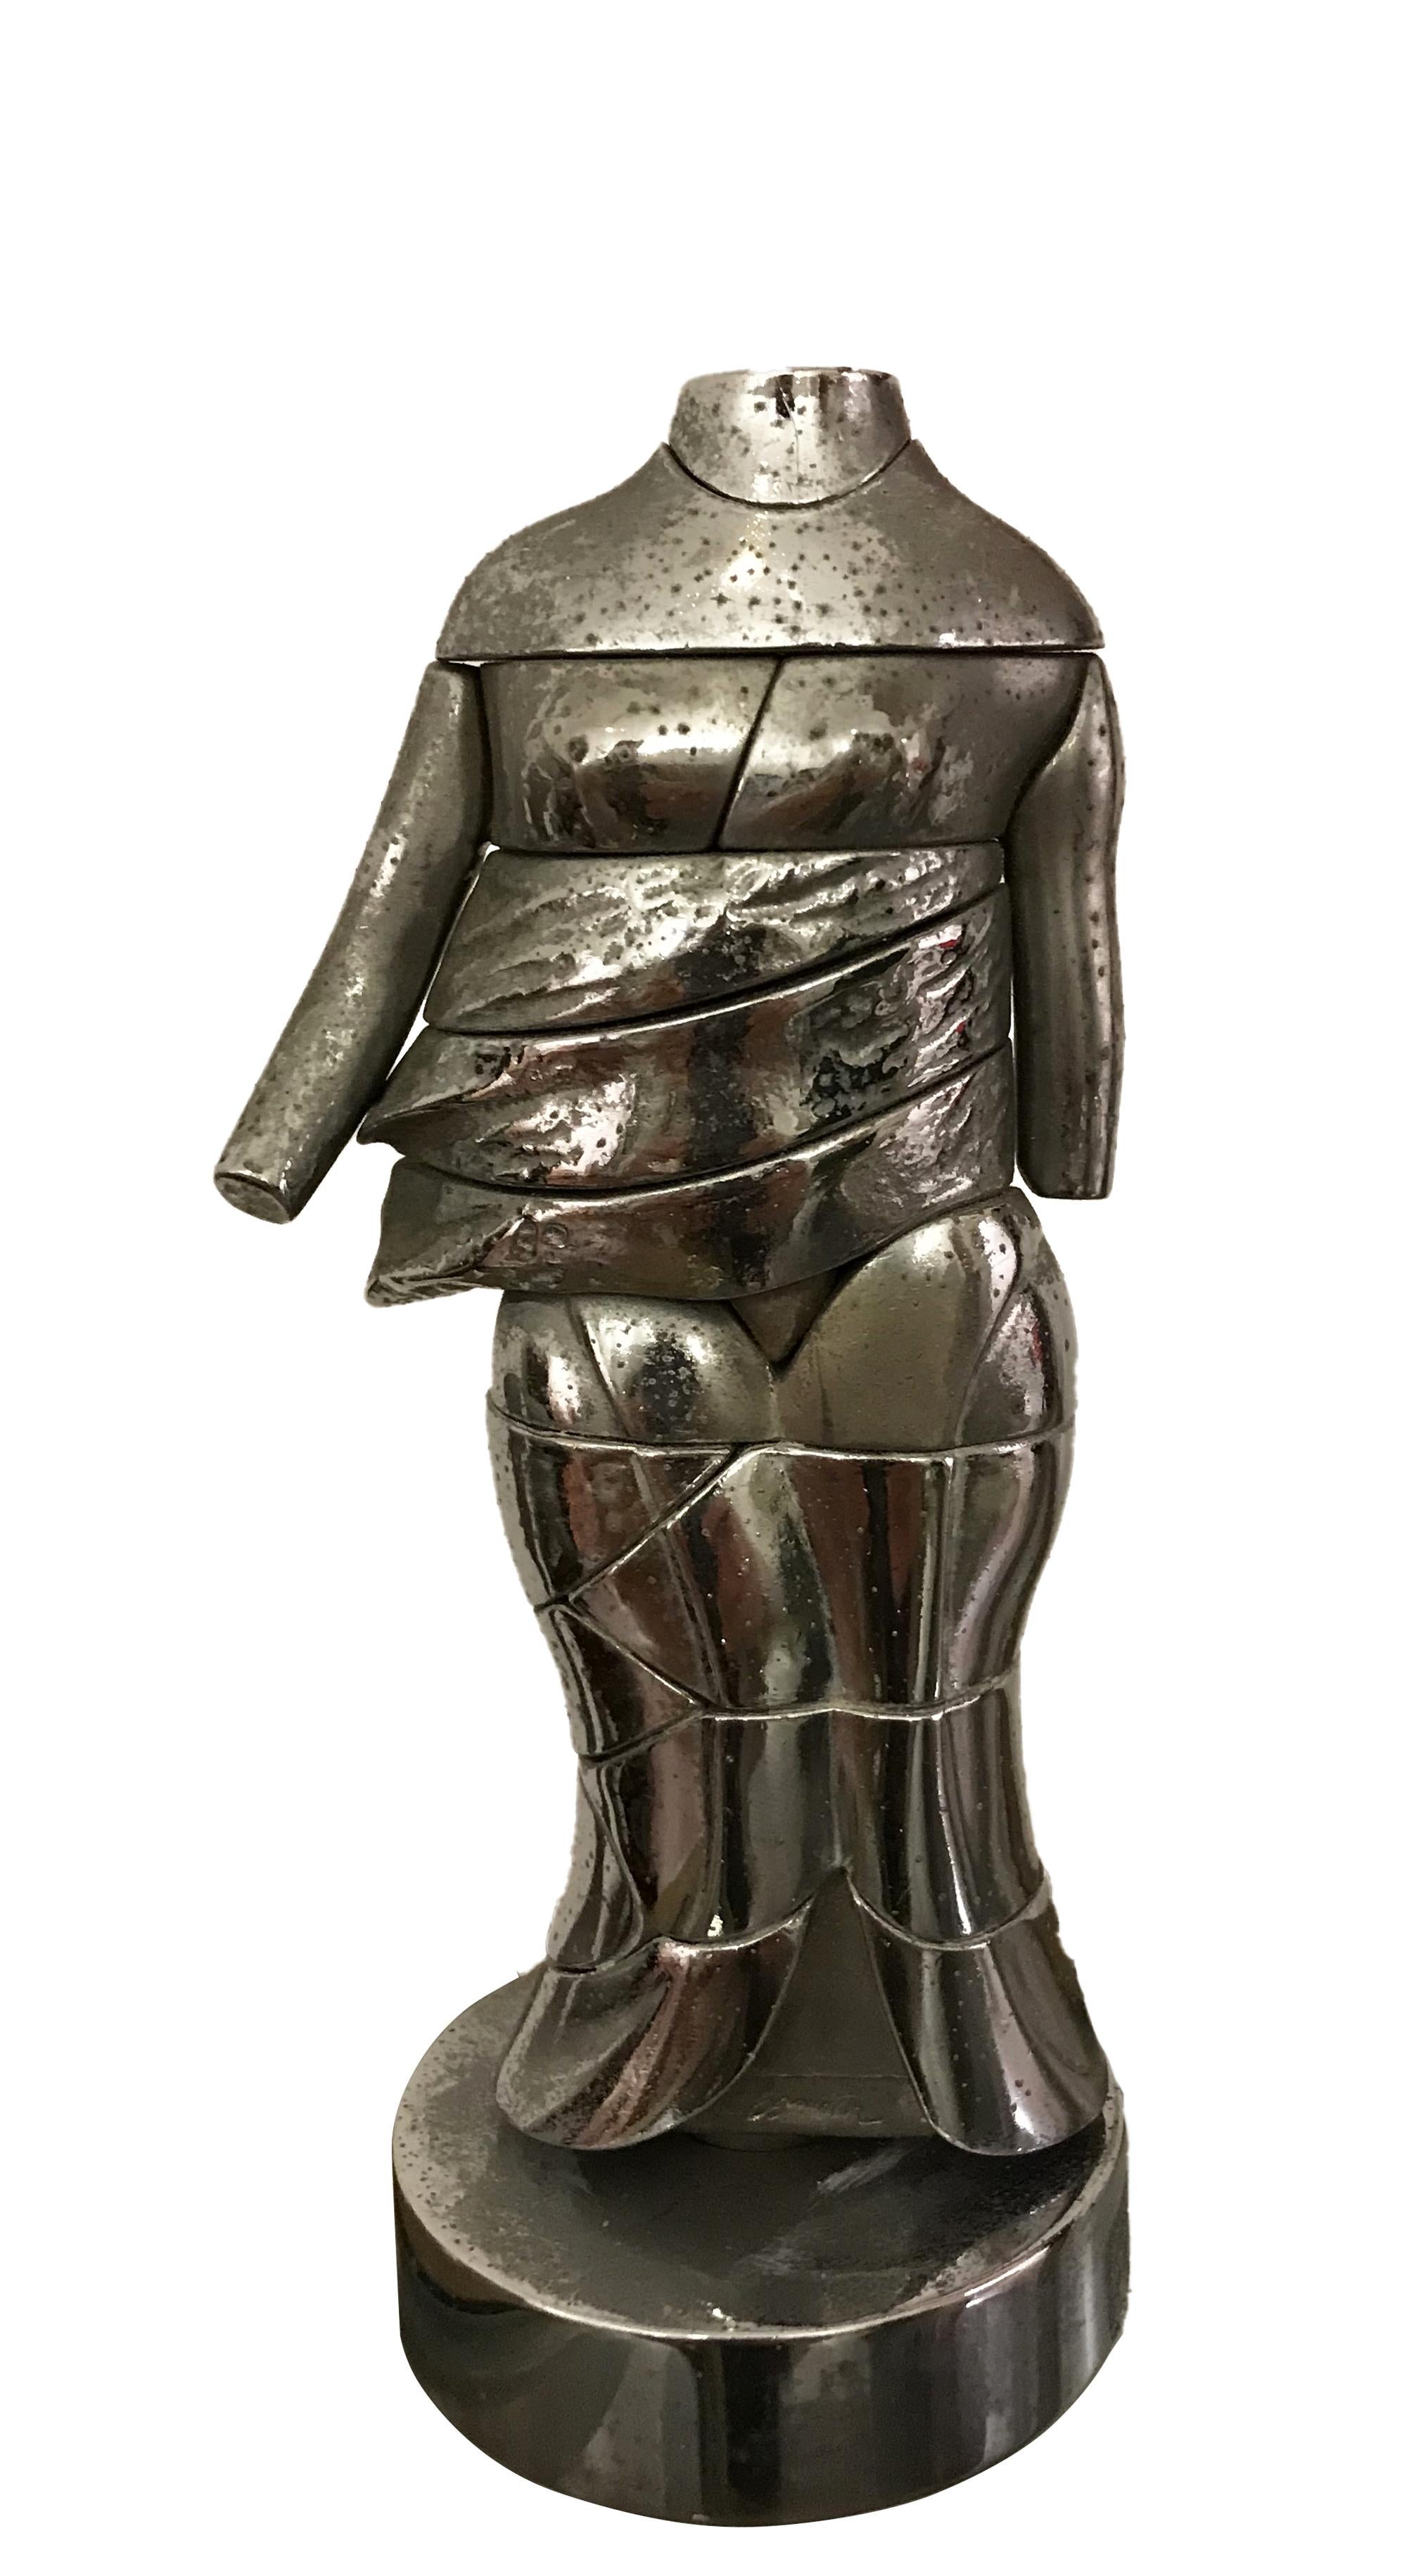 Minicariatide - Bronze Sculpture by M. Berrocal - 1960s